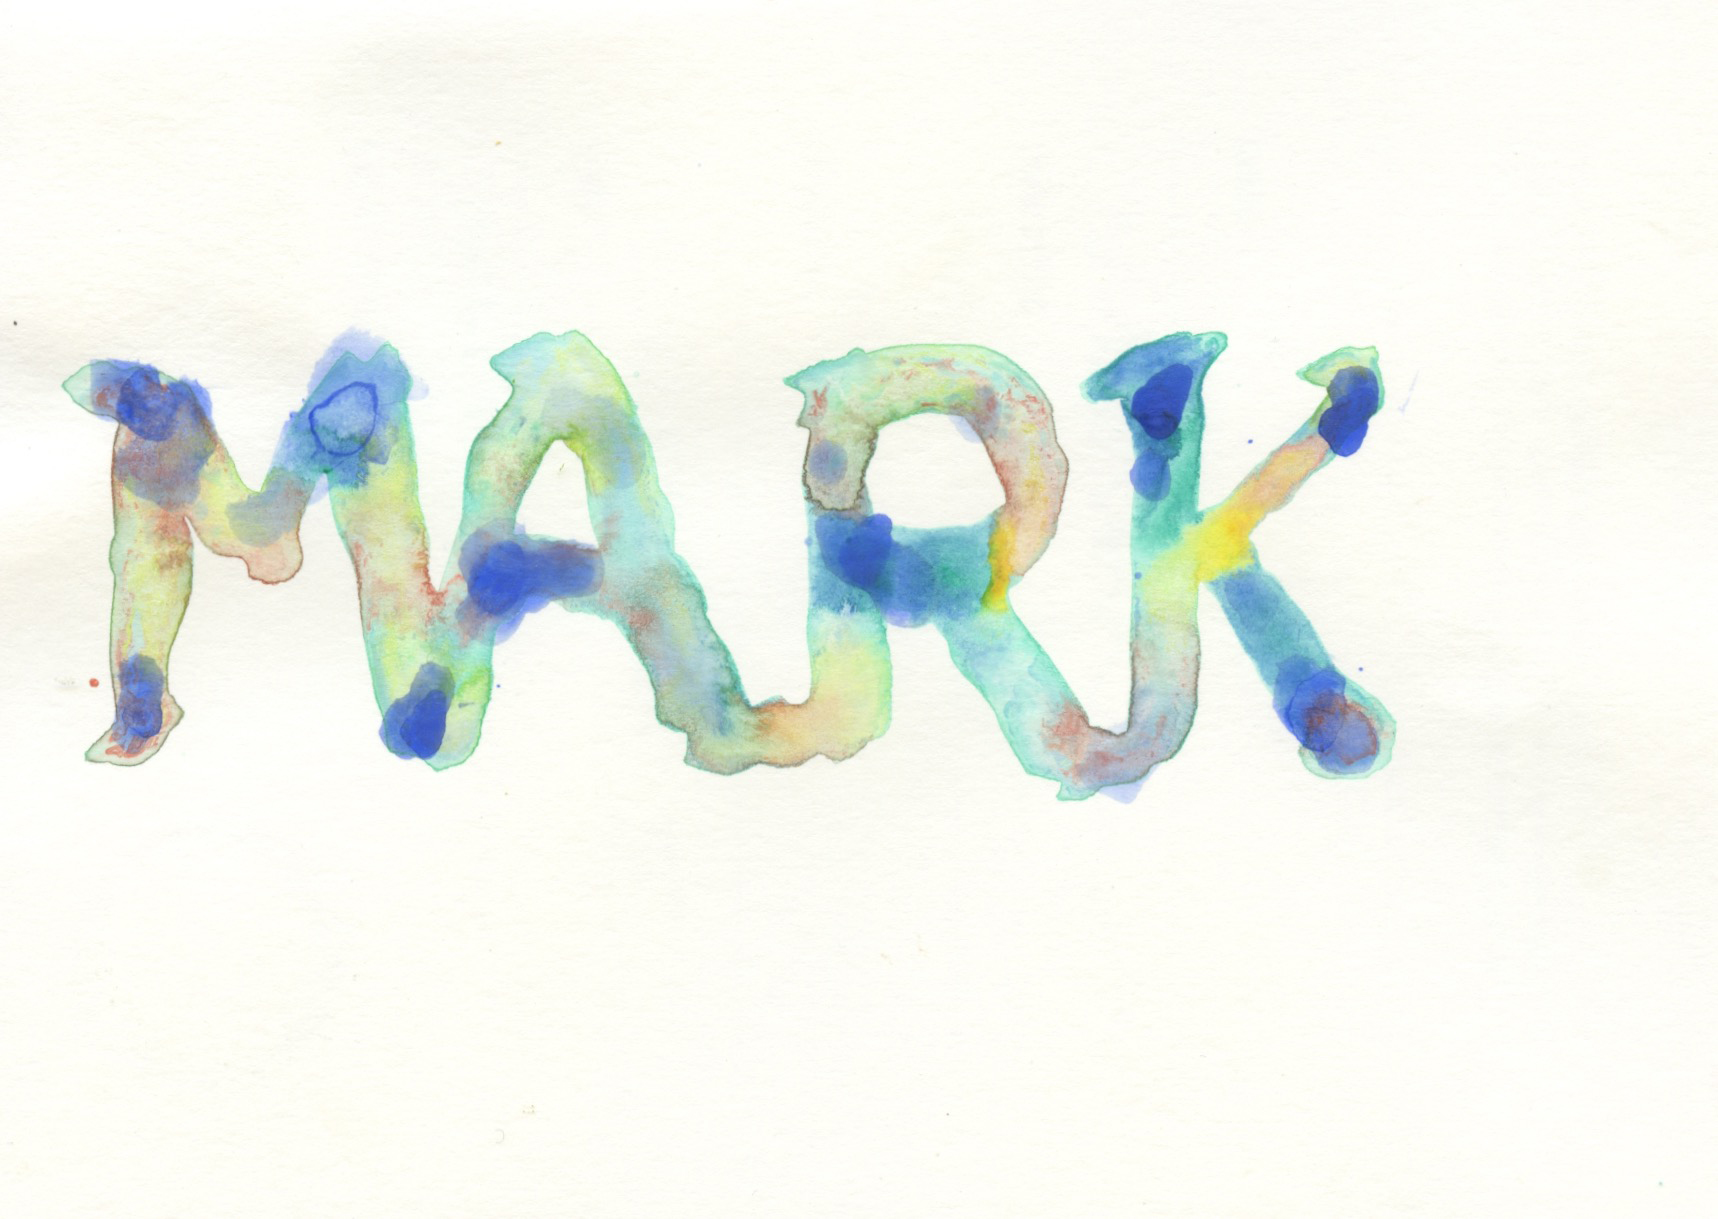 74. Mark Wallinger - Watermark III